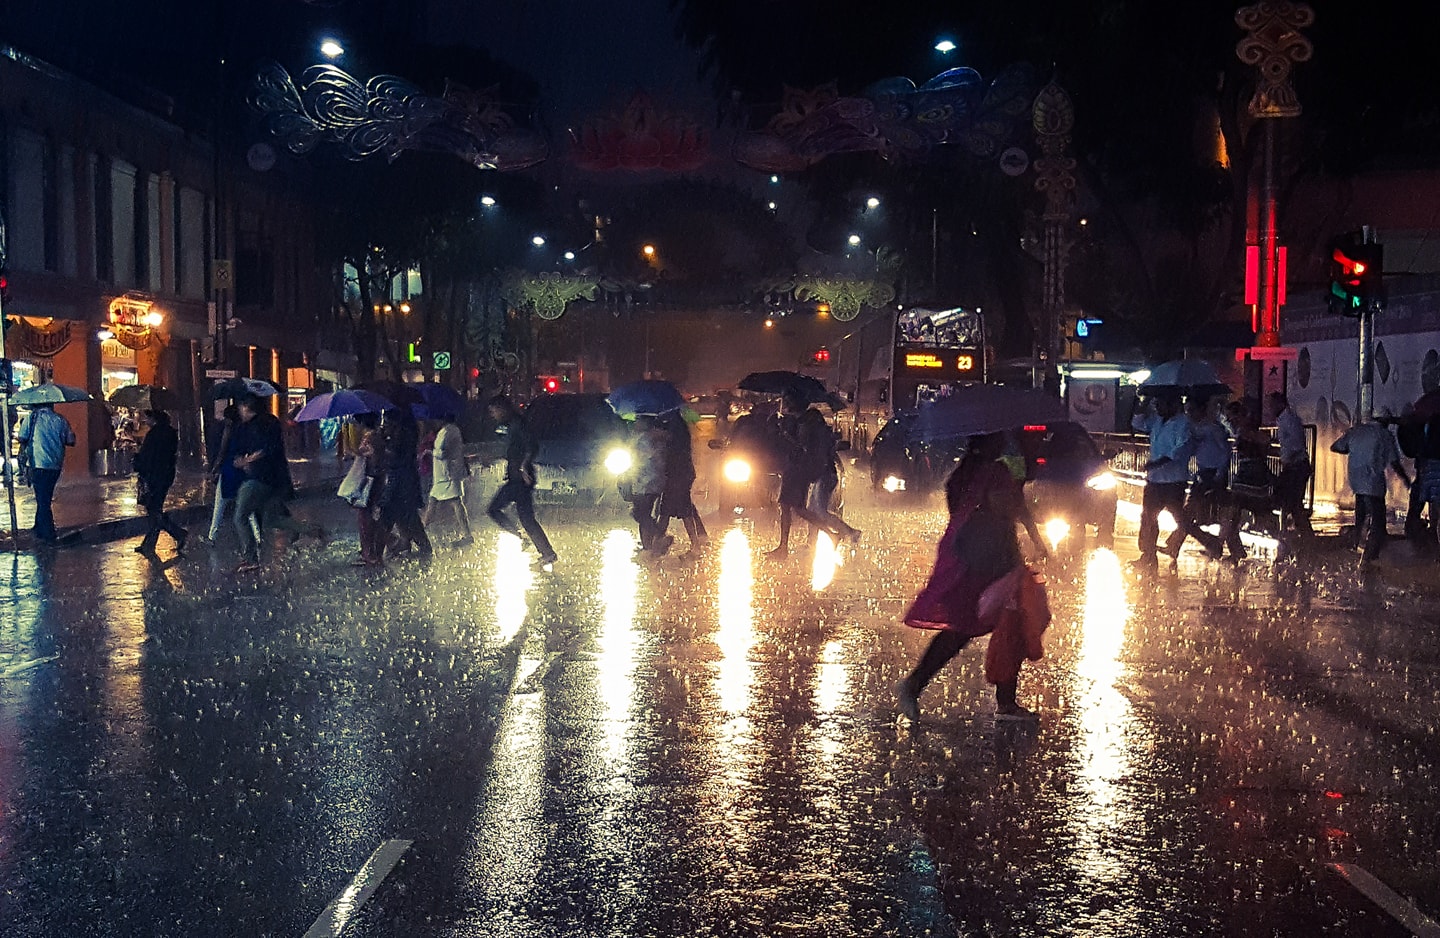 Bức ảnh đường phố: Hãy khám phá những khoảnh khắc đặc trưng của đời sống đường phố qua những bức ảnh tuyệt đẹp. Bạn sẽ được trải nghiệm và cảm nhận những góc phố rực rỡ ánh đèn, nét đẹp truyền thống của dân tộc Việt Nam và nhịp sống sôi động của đô thị hiện đại.